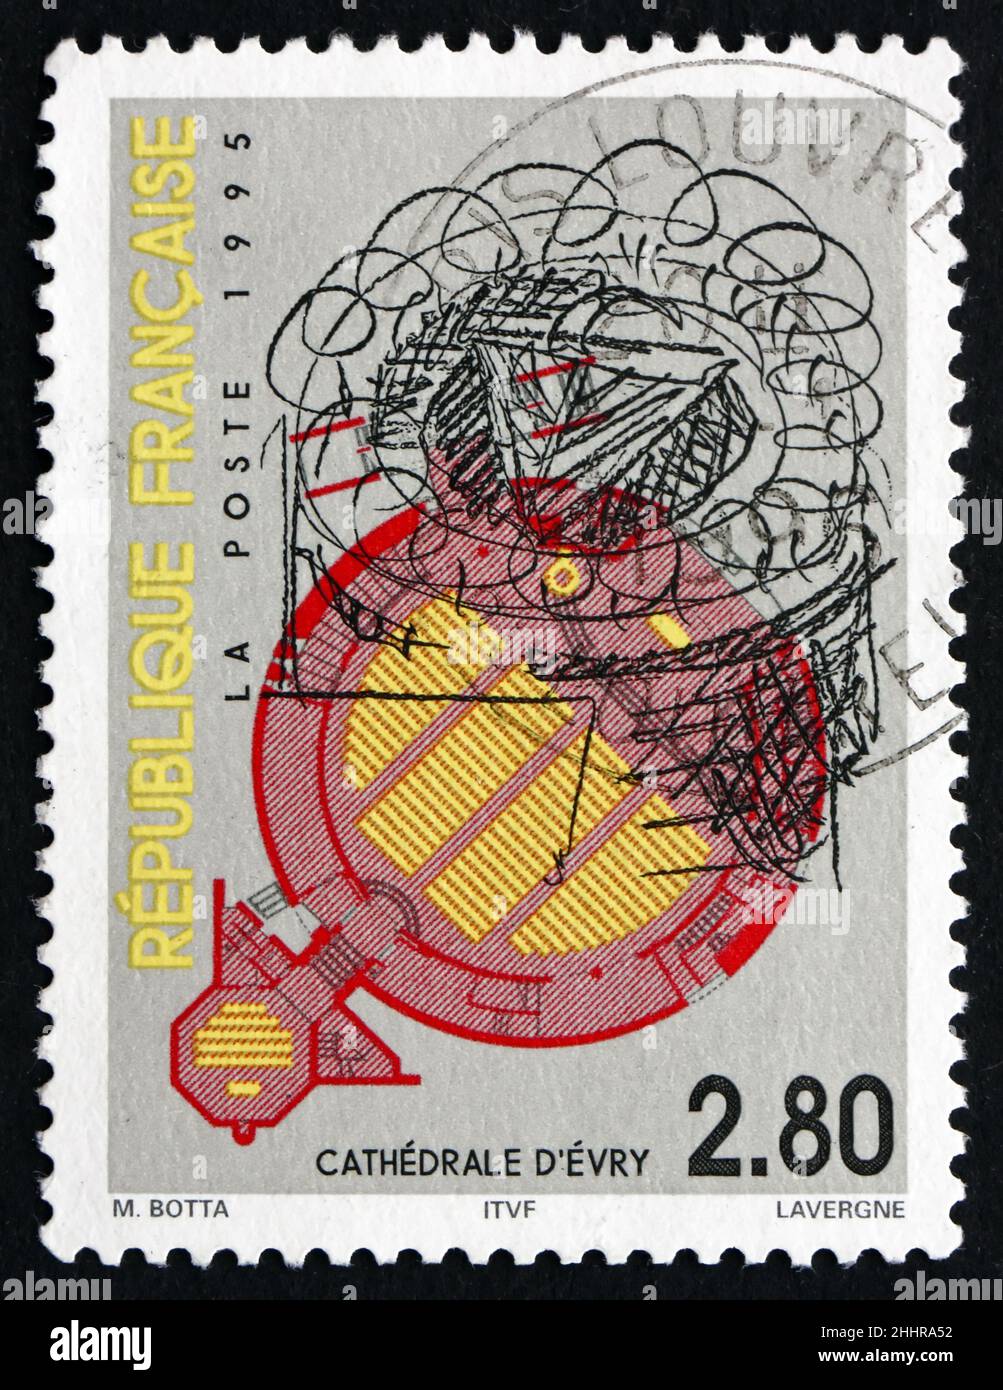 FRANCE - VERS 1995 : un timbre imprimé en France montre la cathédrale d'Evry, Saint Corbinian, cathédrale du 20th siècle, vers 1995 Banque D'Images